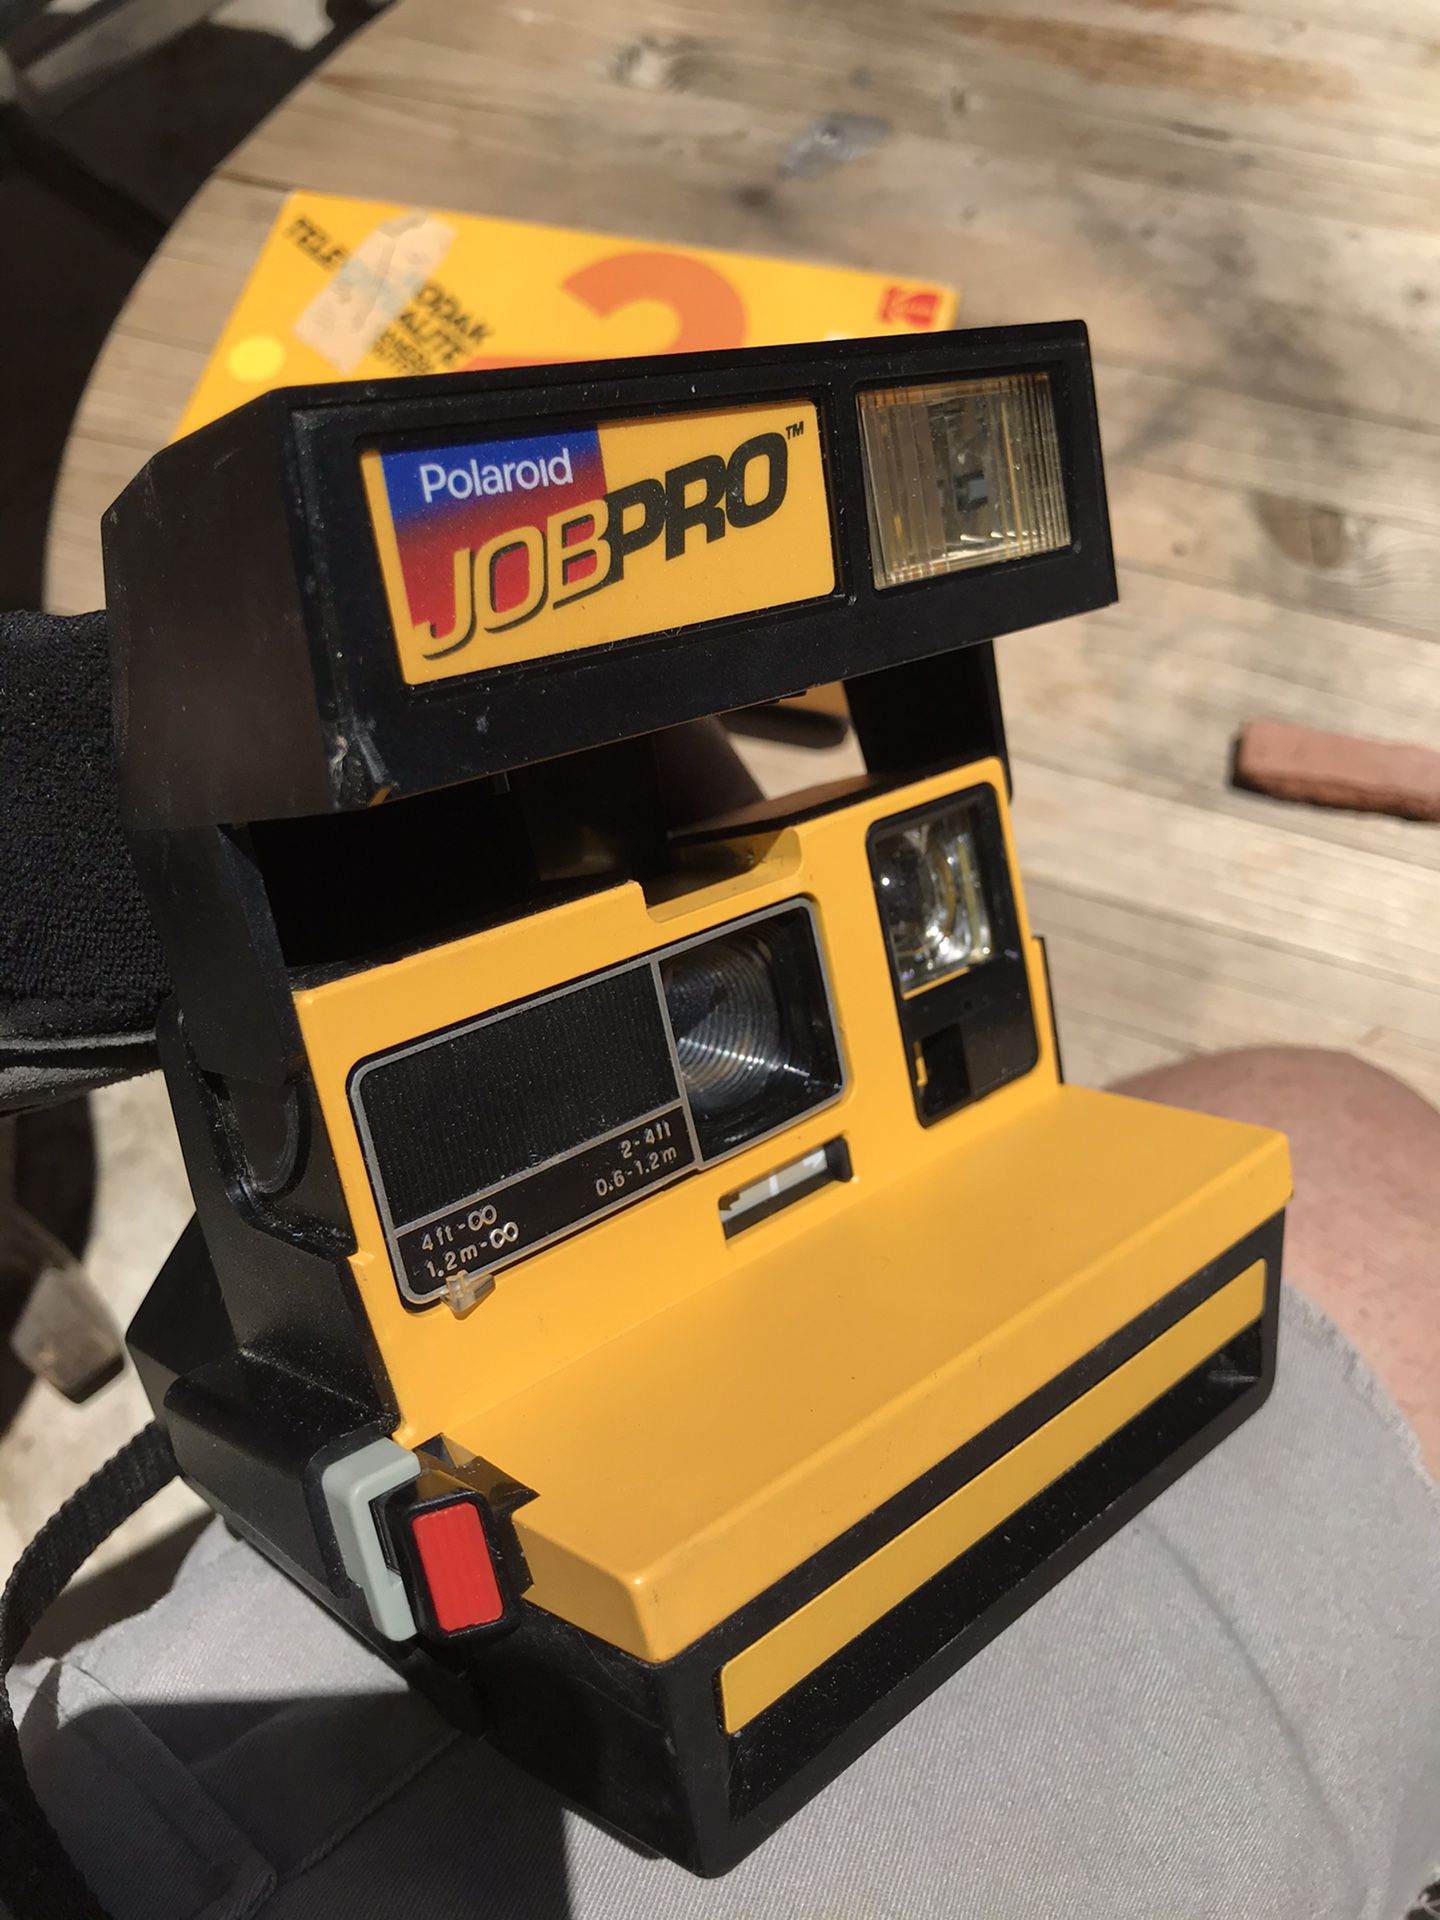 Polaroid Job Pro Camera, never used